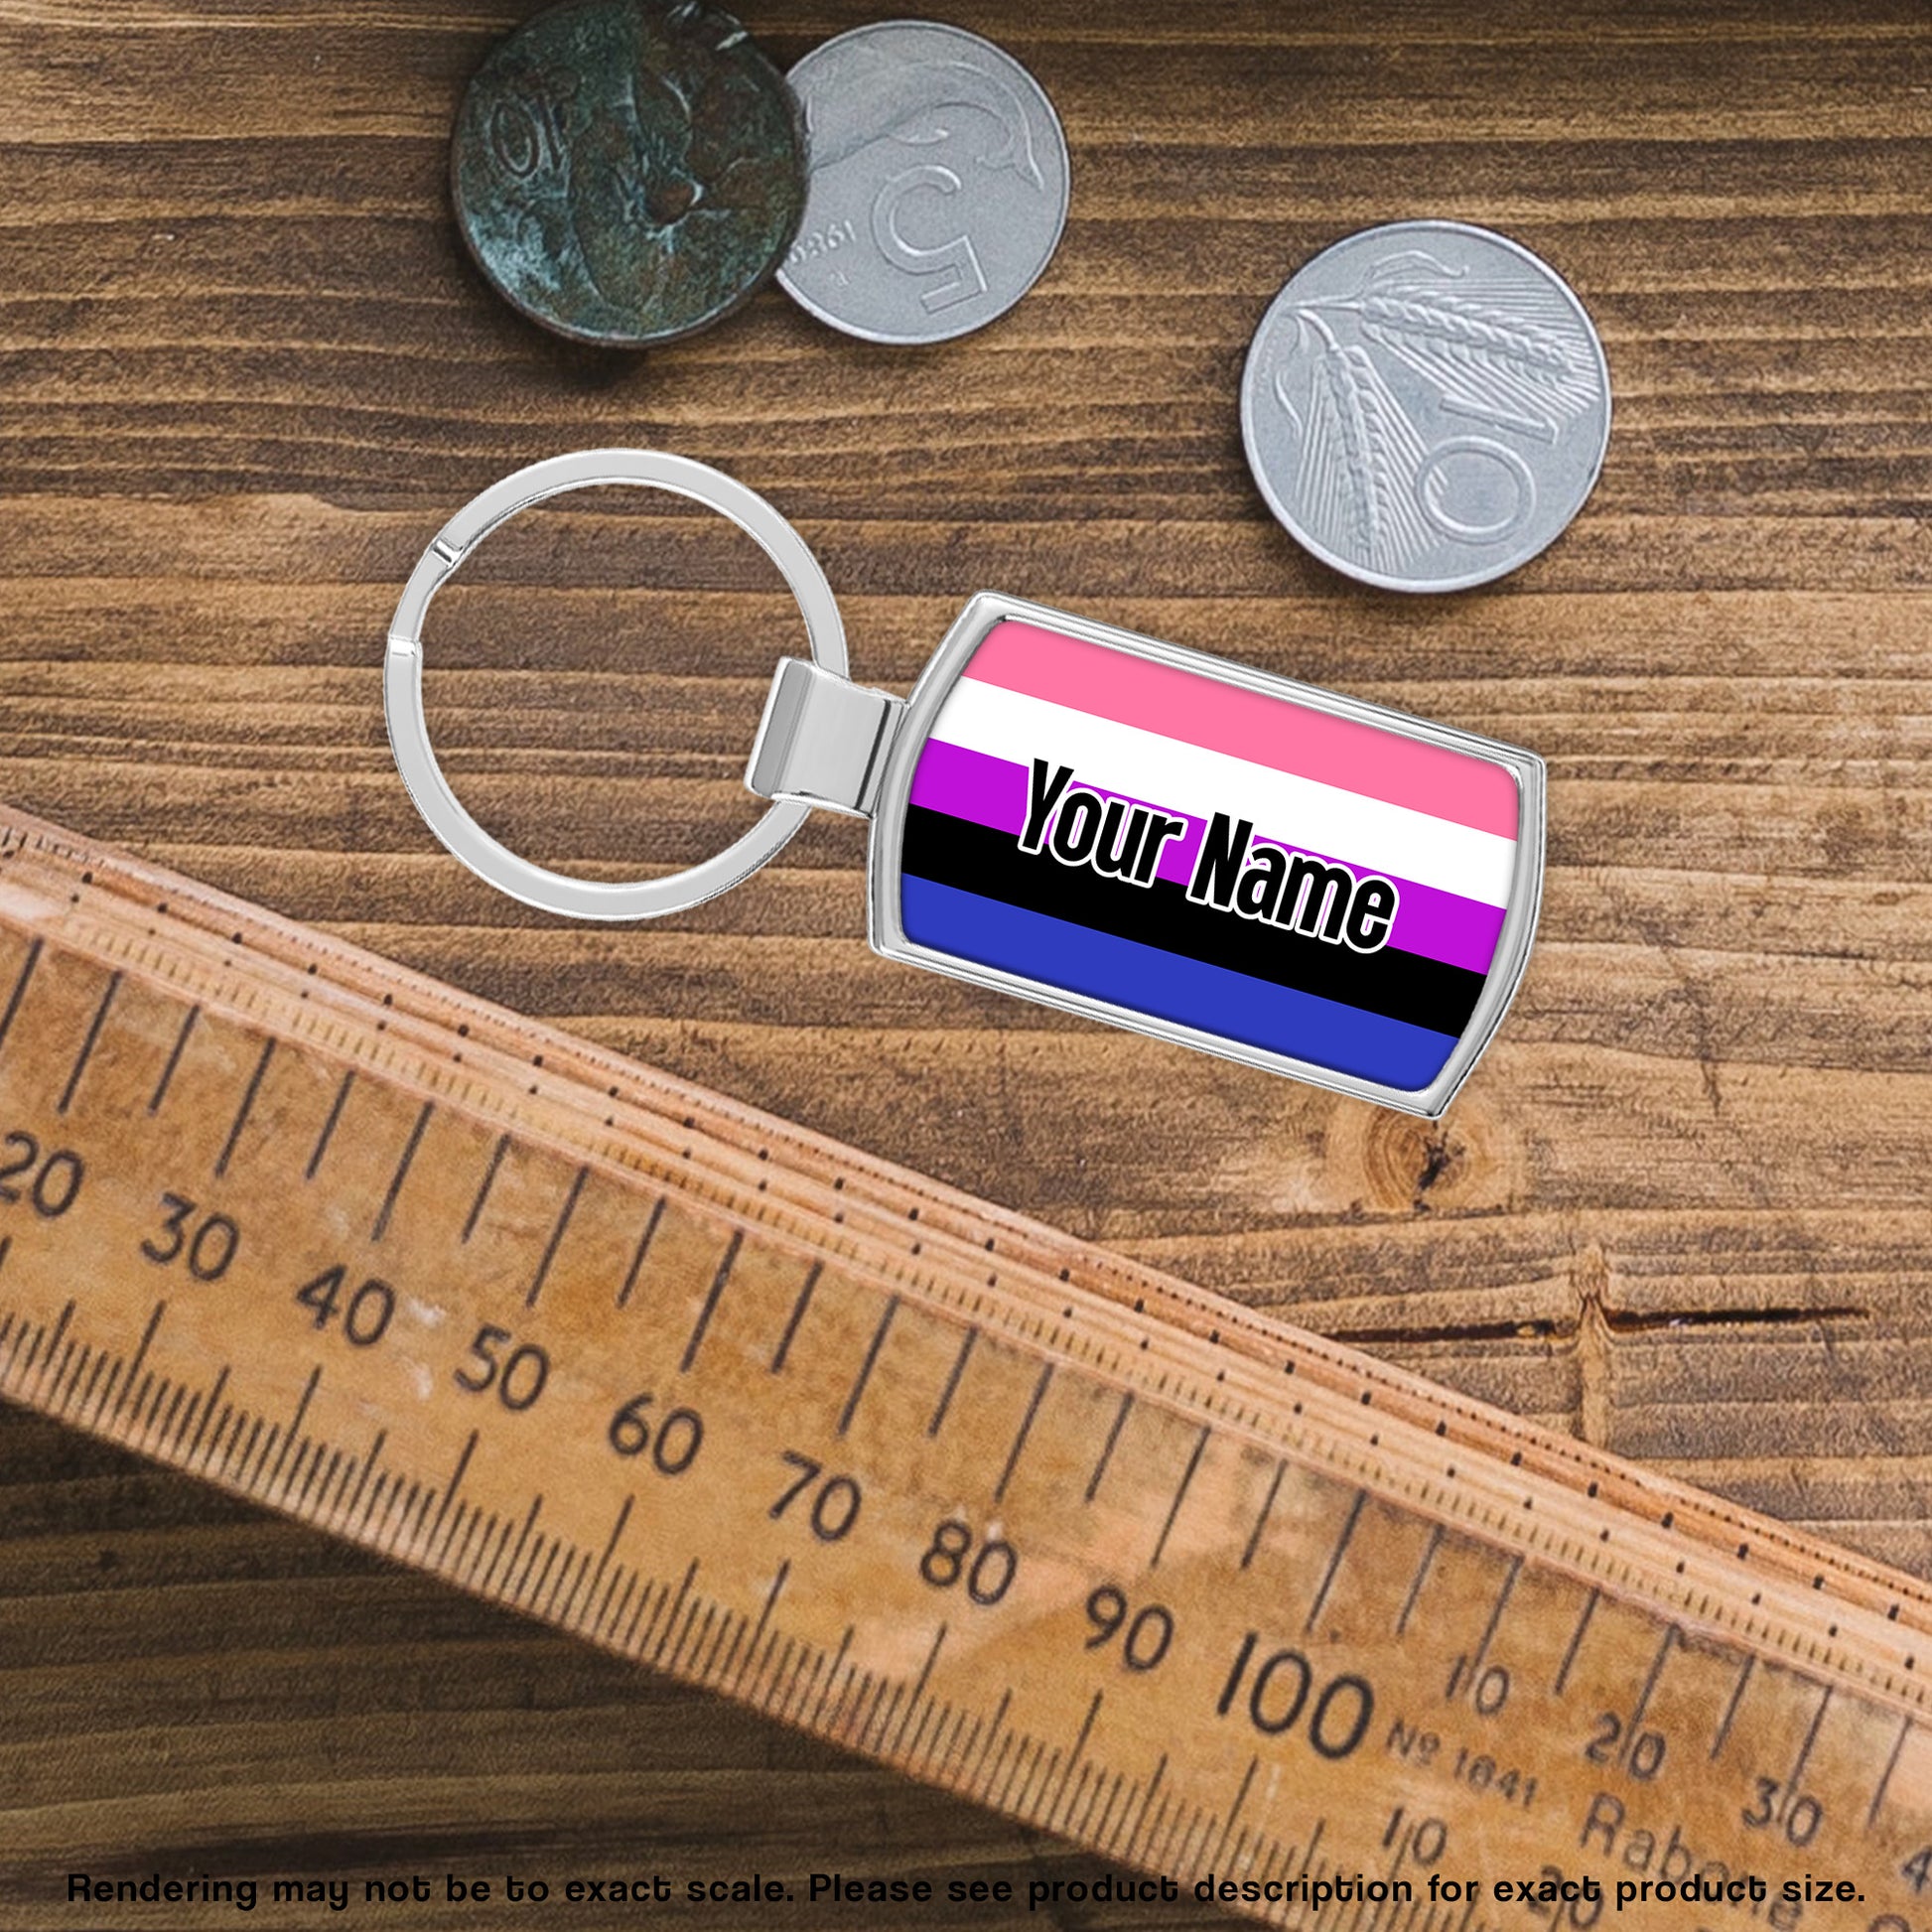 Gender fluid pride personalised metal keyring